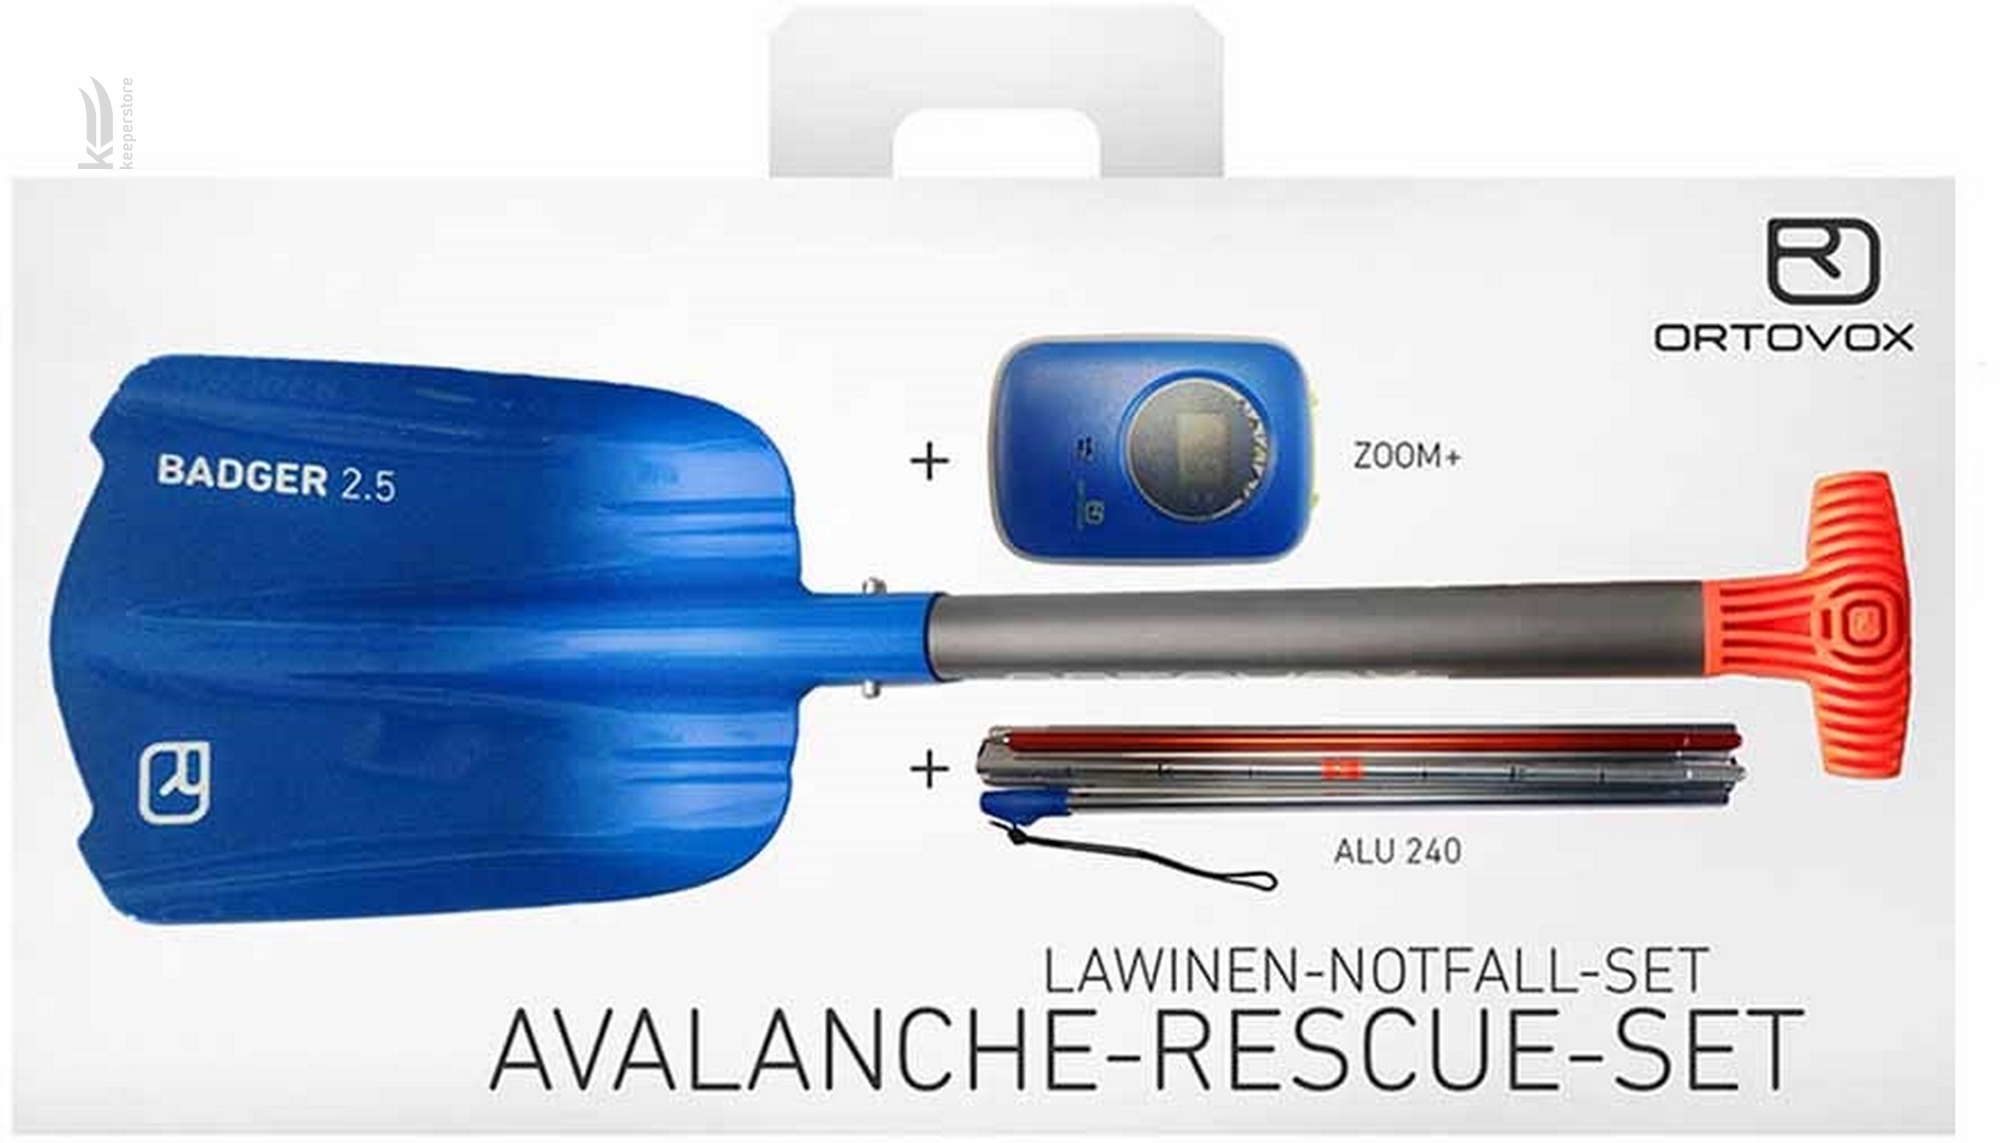 Прокат Ortovox Avalanche Rescue Set Zoom+ 2018